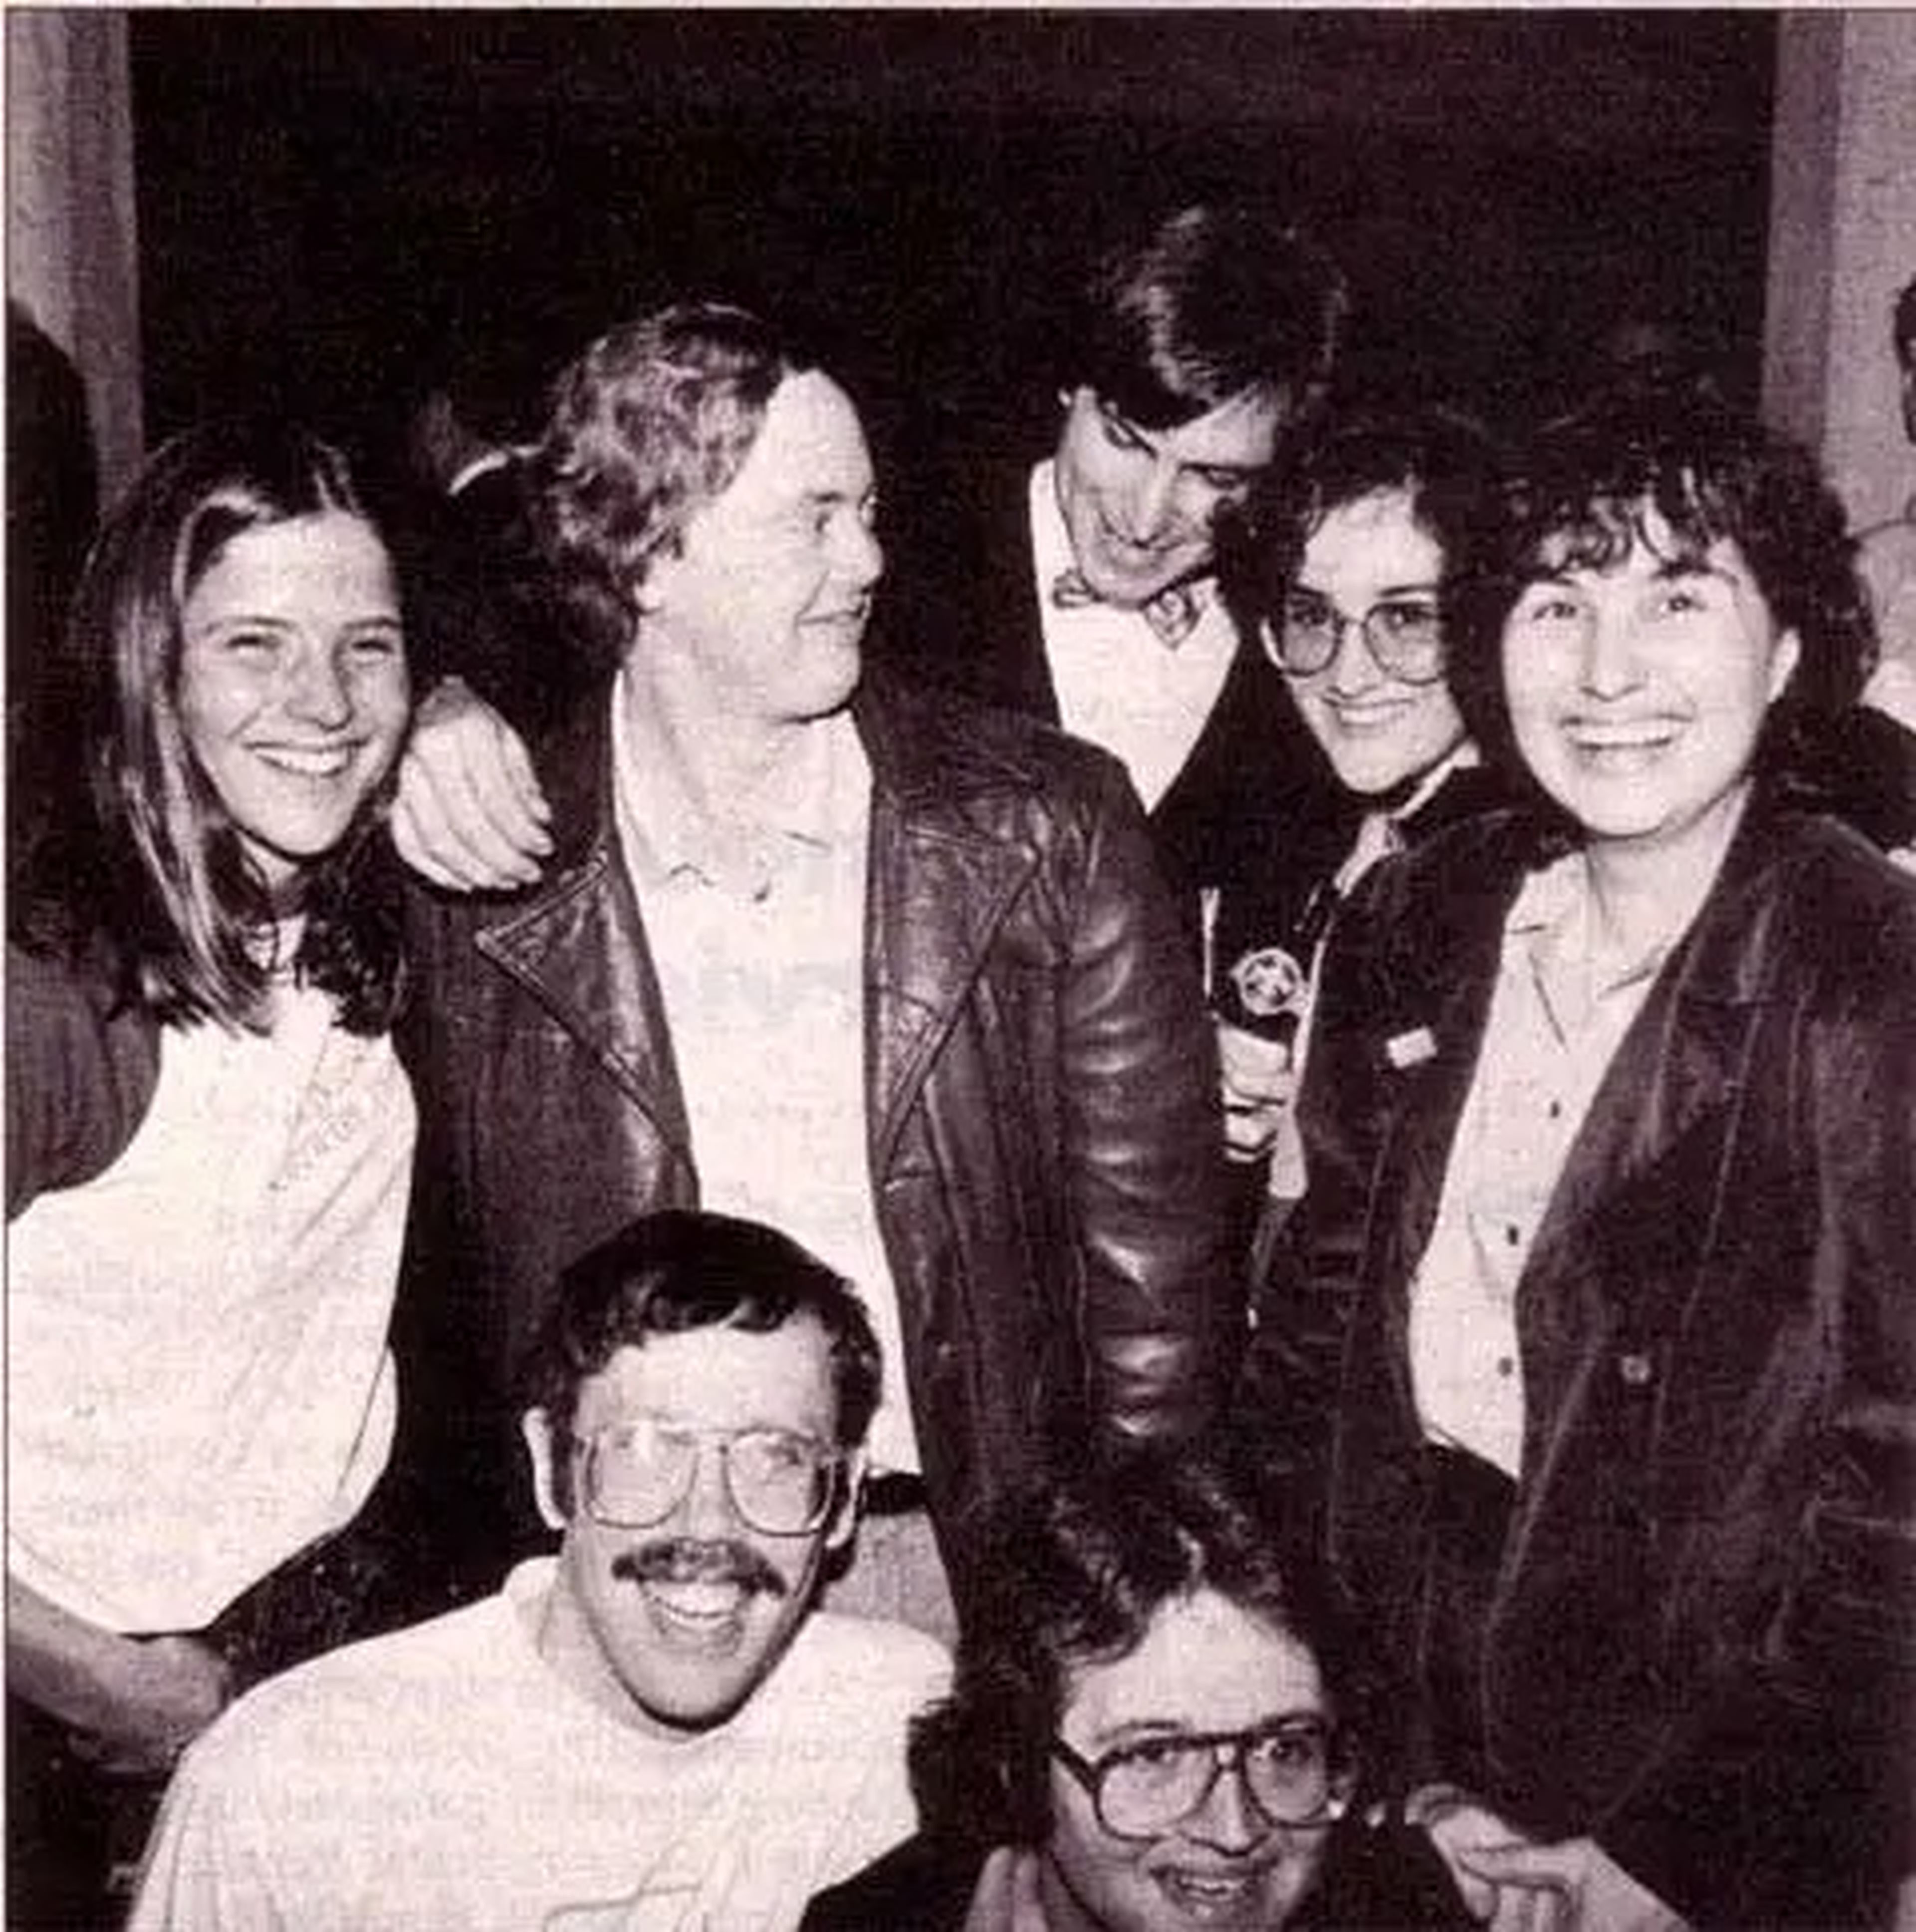 Miembros del equipo Mac tras la presentación del ordenador Macintosh. De izquierda a derecha de pie: Rony Sebok, Burrell Smith, Steve Jobs, Joanna Hoffman y Hasmig Seropian; arrodillados están Bill Atkinson y Andy Hertzfeld.